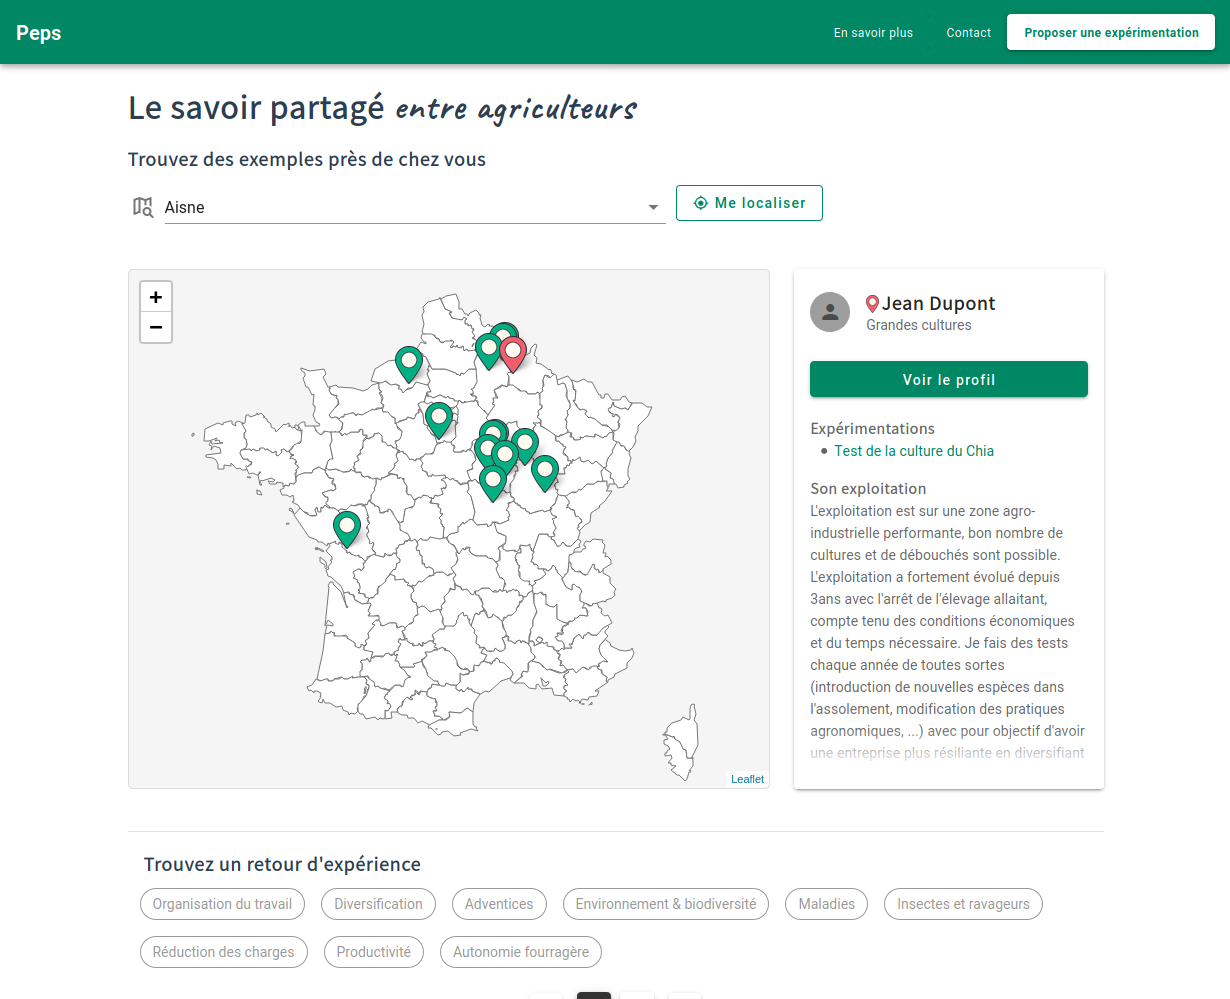 Présentation des expériences d'agriculteurs sur une carte de France Métropolitaine. À droite, une fiche présentant un résumé de l'exploitation de l'agriculteur